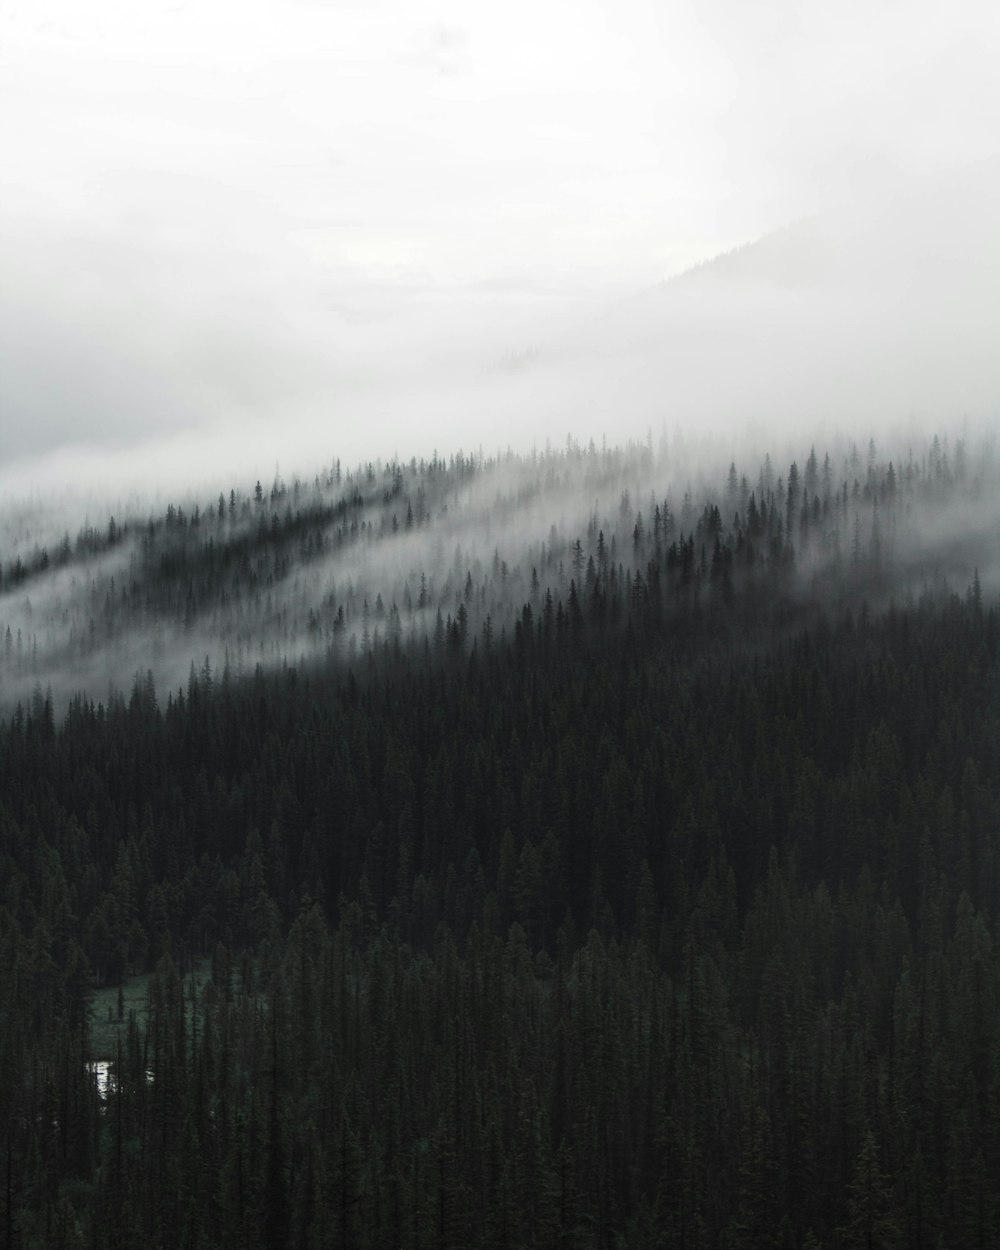 Photographie en niveaux de gris d’une forêt couverte de brouillards